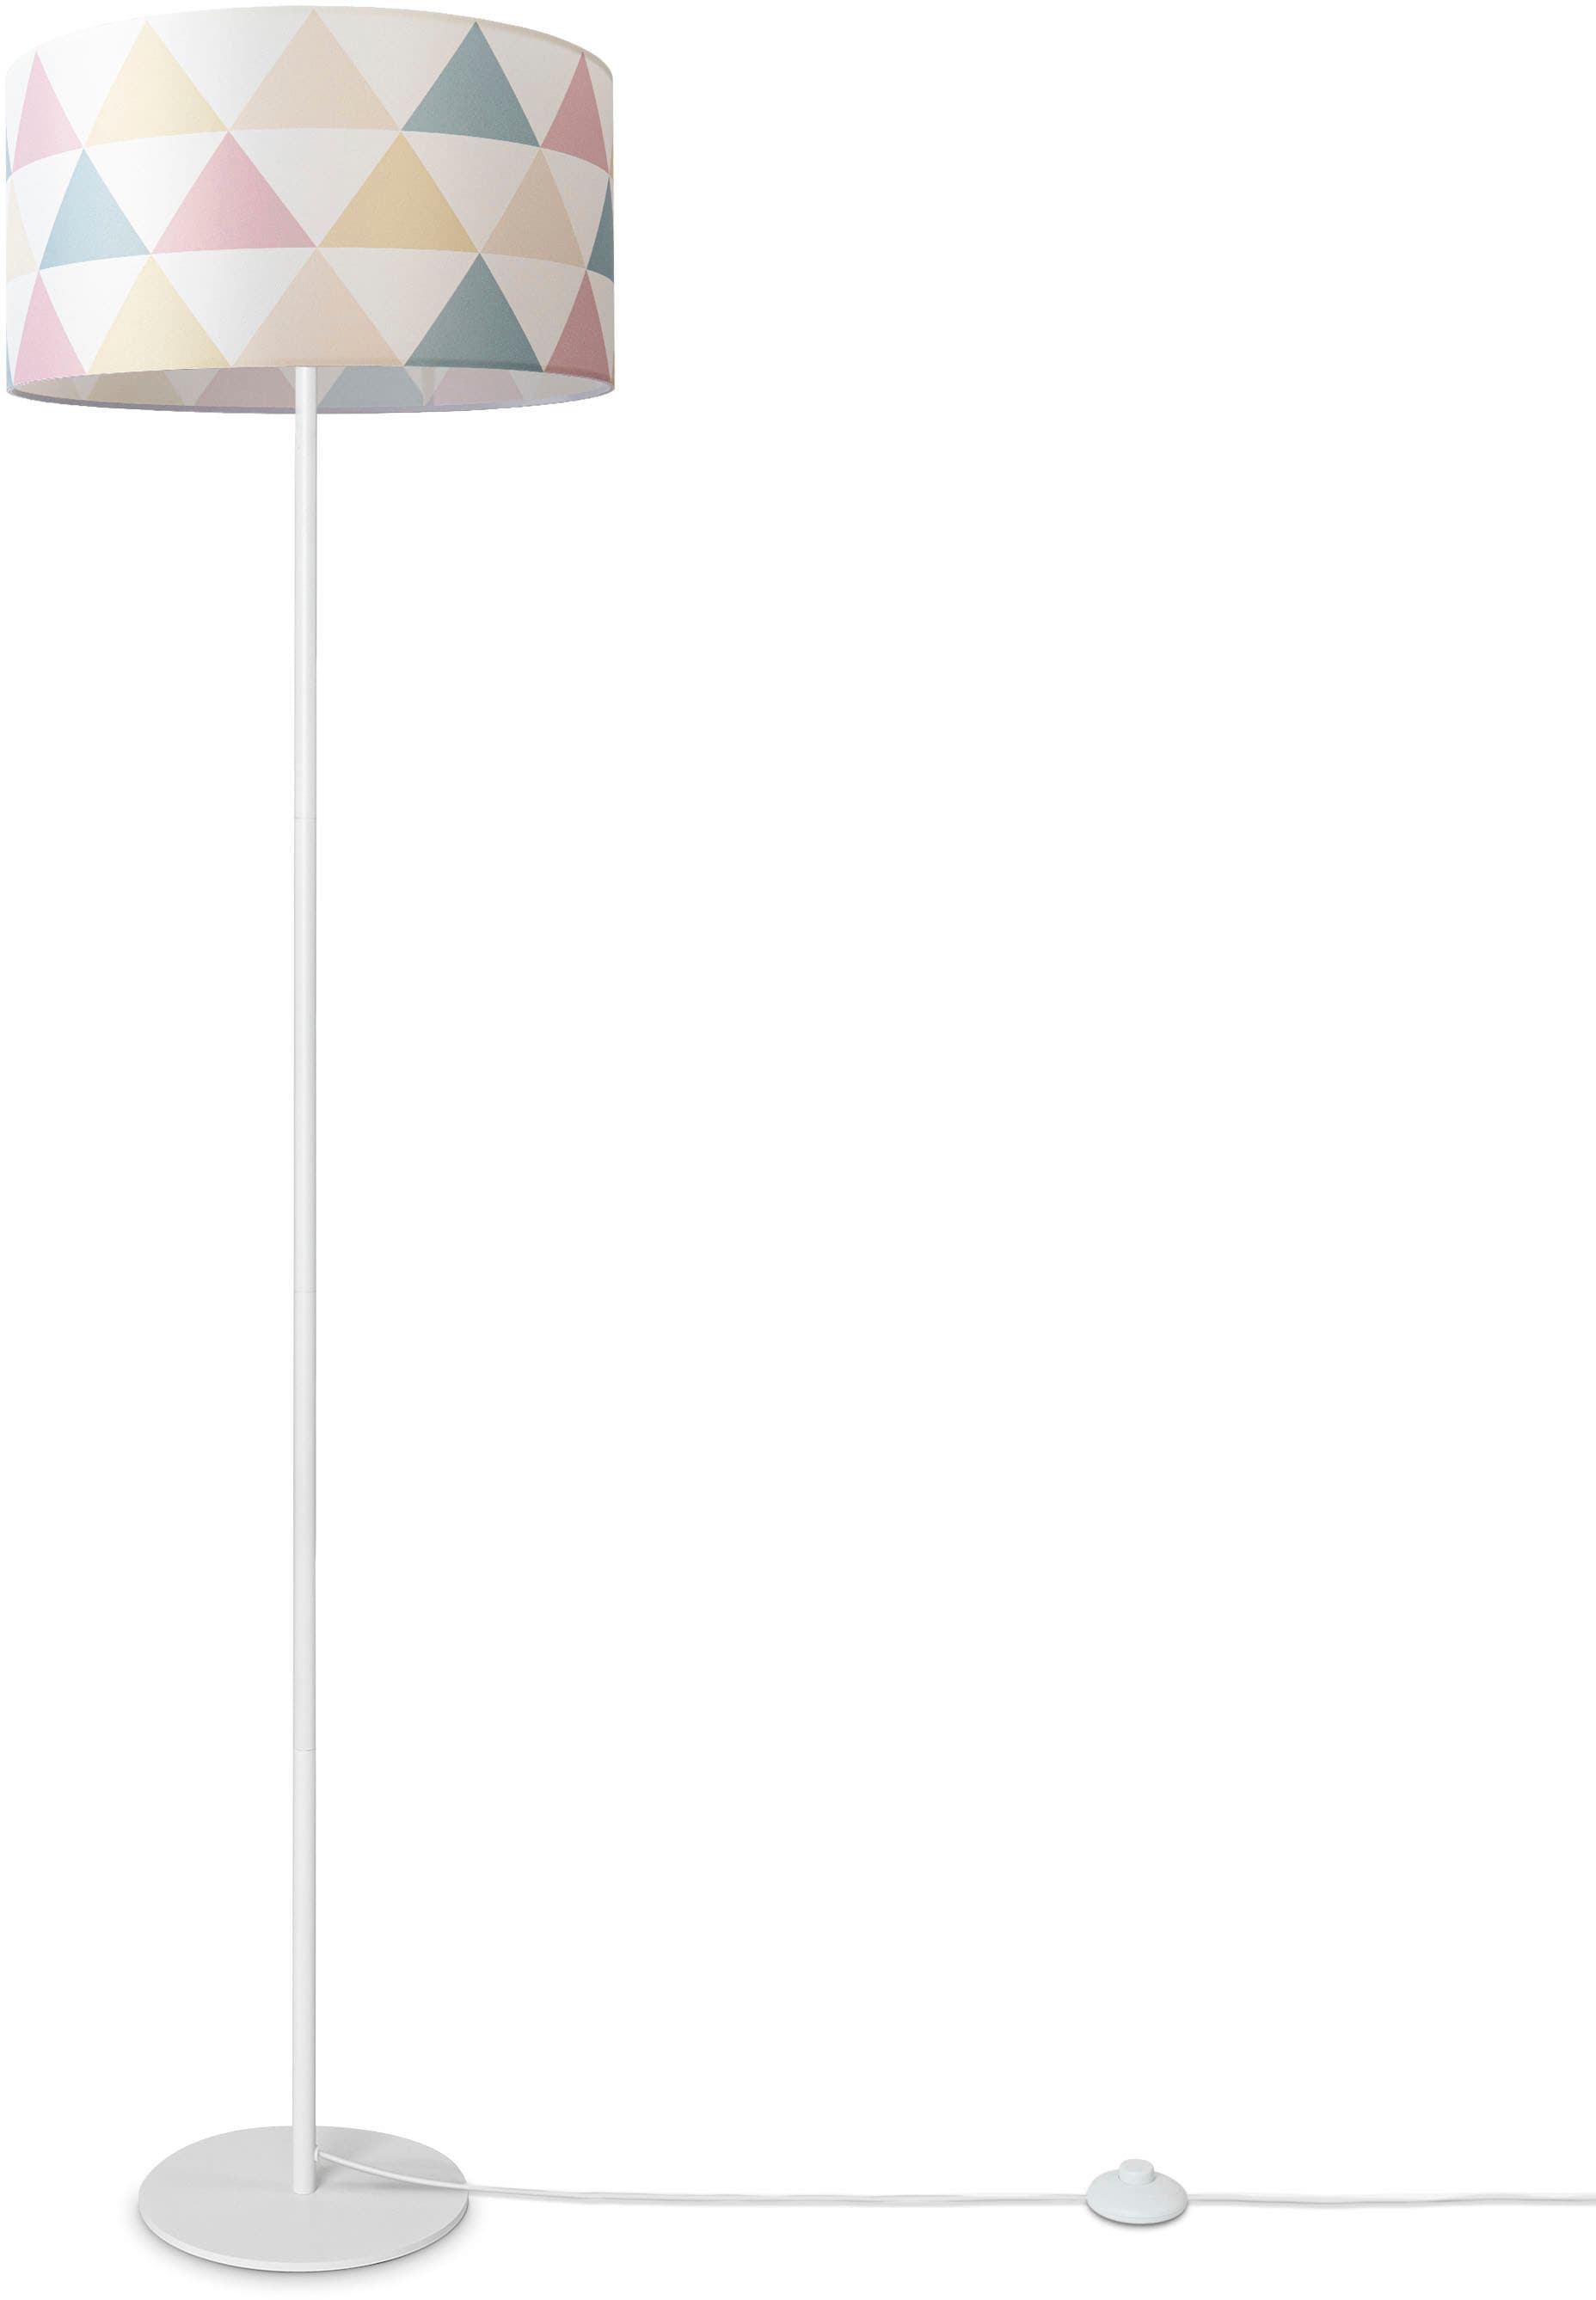 Textil online Stehlampe Stehlampe 3 | Dreieck »Luca mit Jahren Home Bunt Garantie Wohnzimmer kaufen Standleuchte Stoffschirm Paco XXL Delta«,